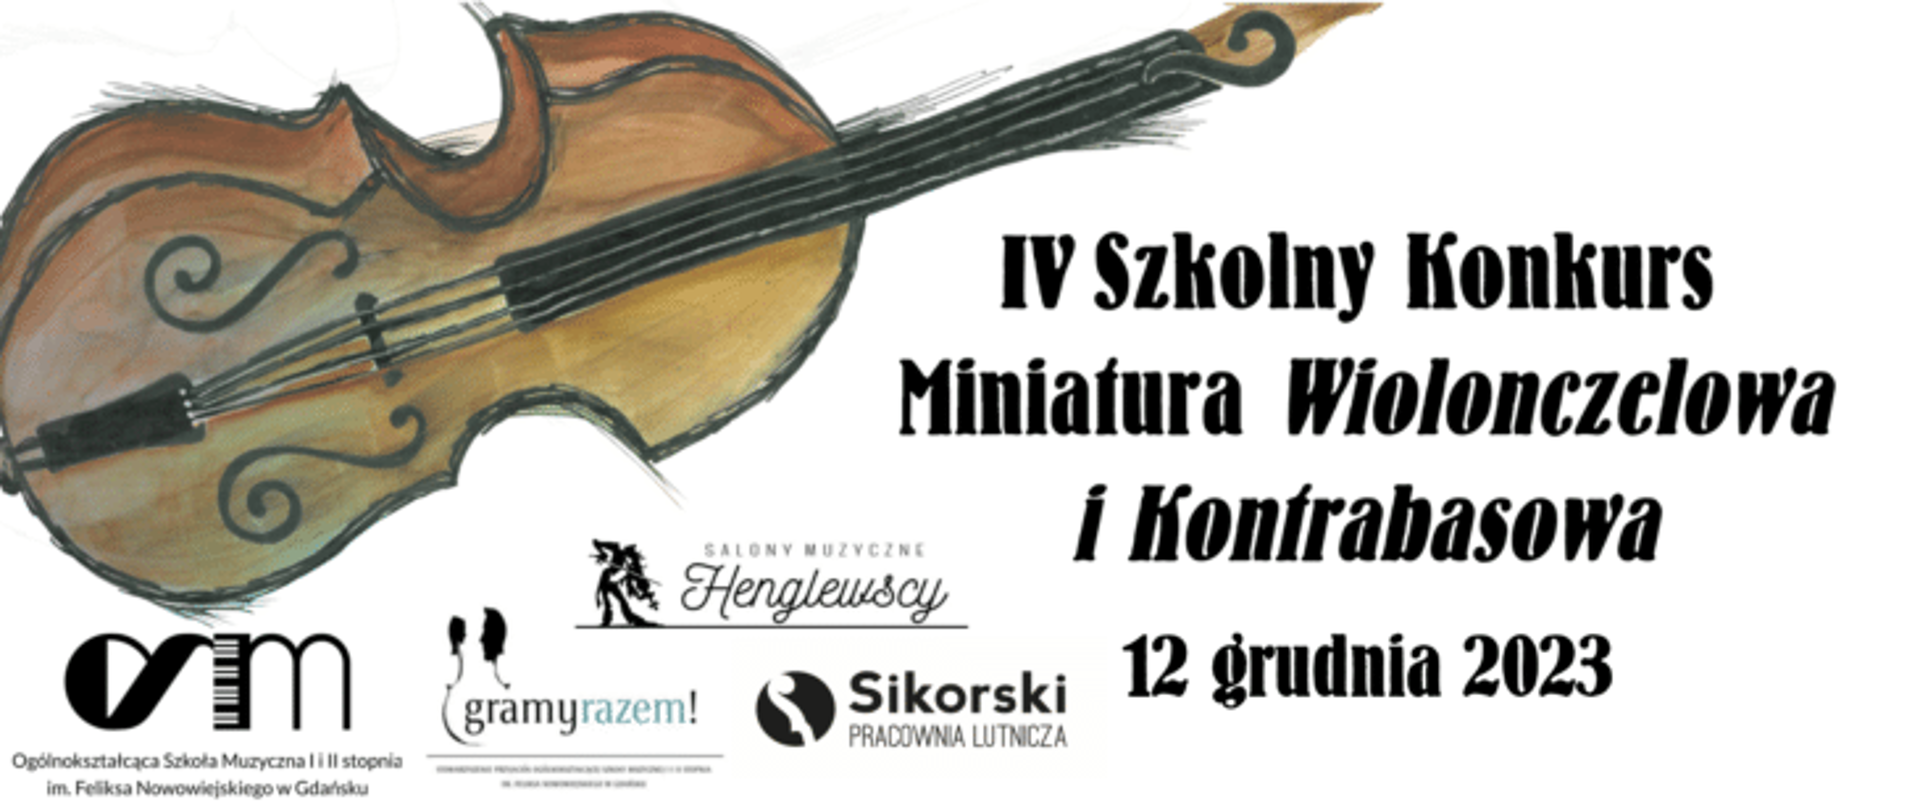 Na jasnym tle rysunek kontrabasu, logotypy sponsorów oraz napis IV Szkolny Konkurs Miniatur Wiolonczelowa i Kontrabasowa